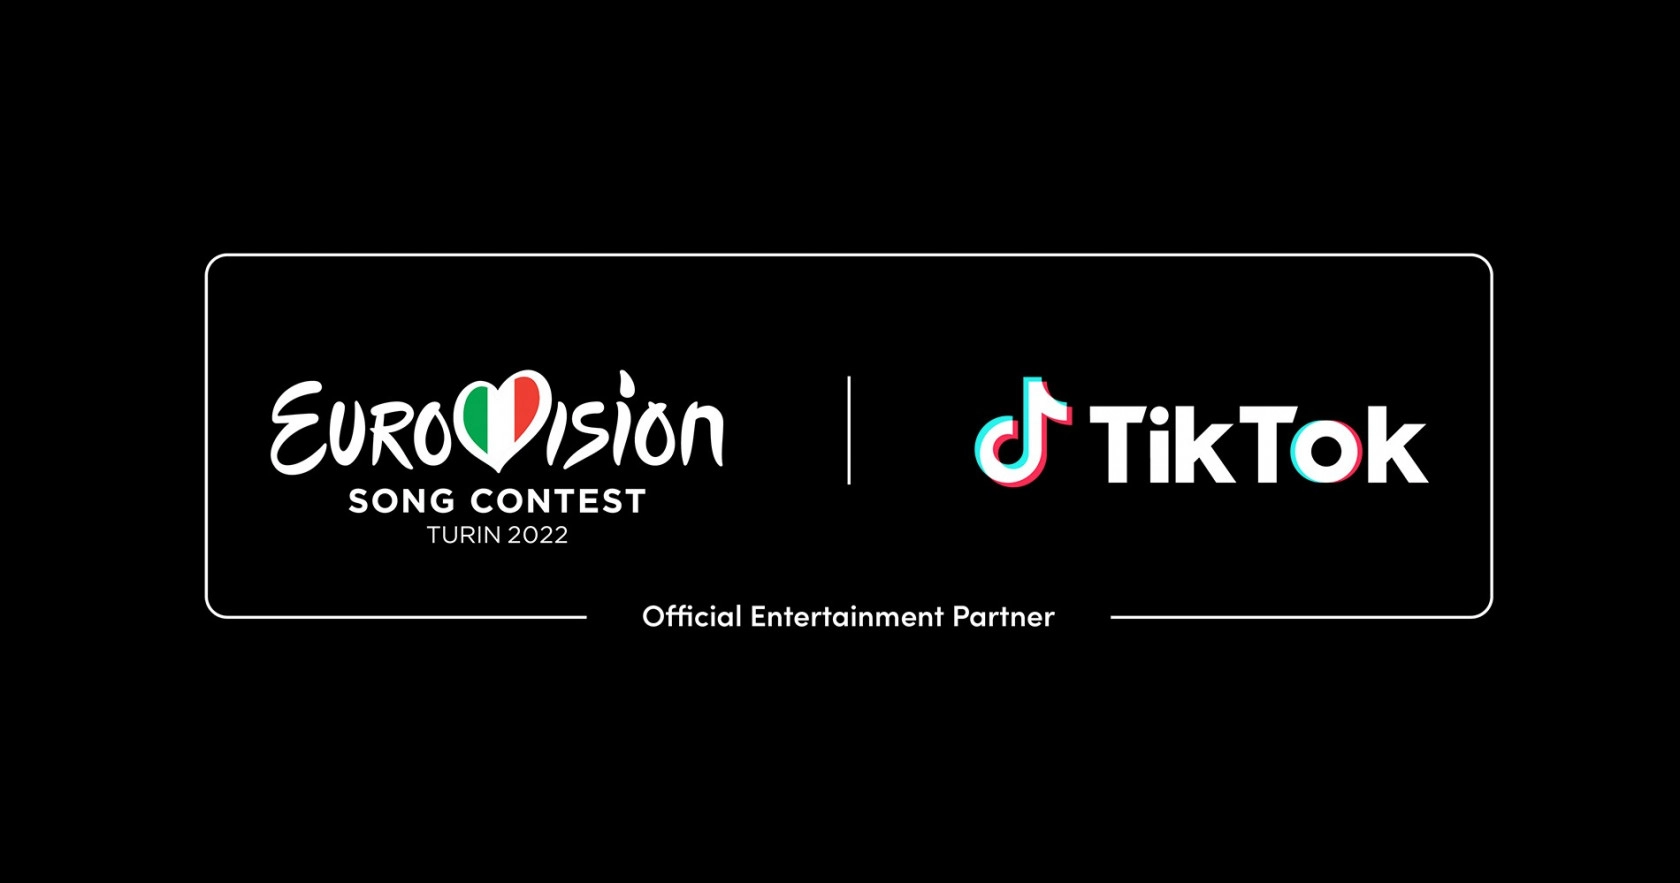 TikTok sarà partner ufficiale dell’Eurovision 2022